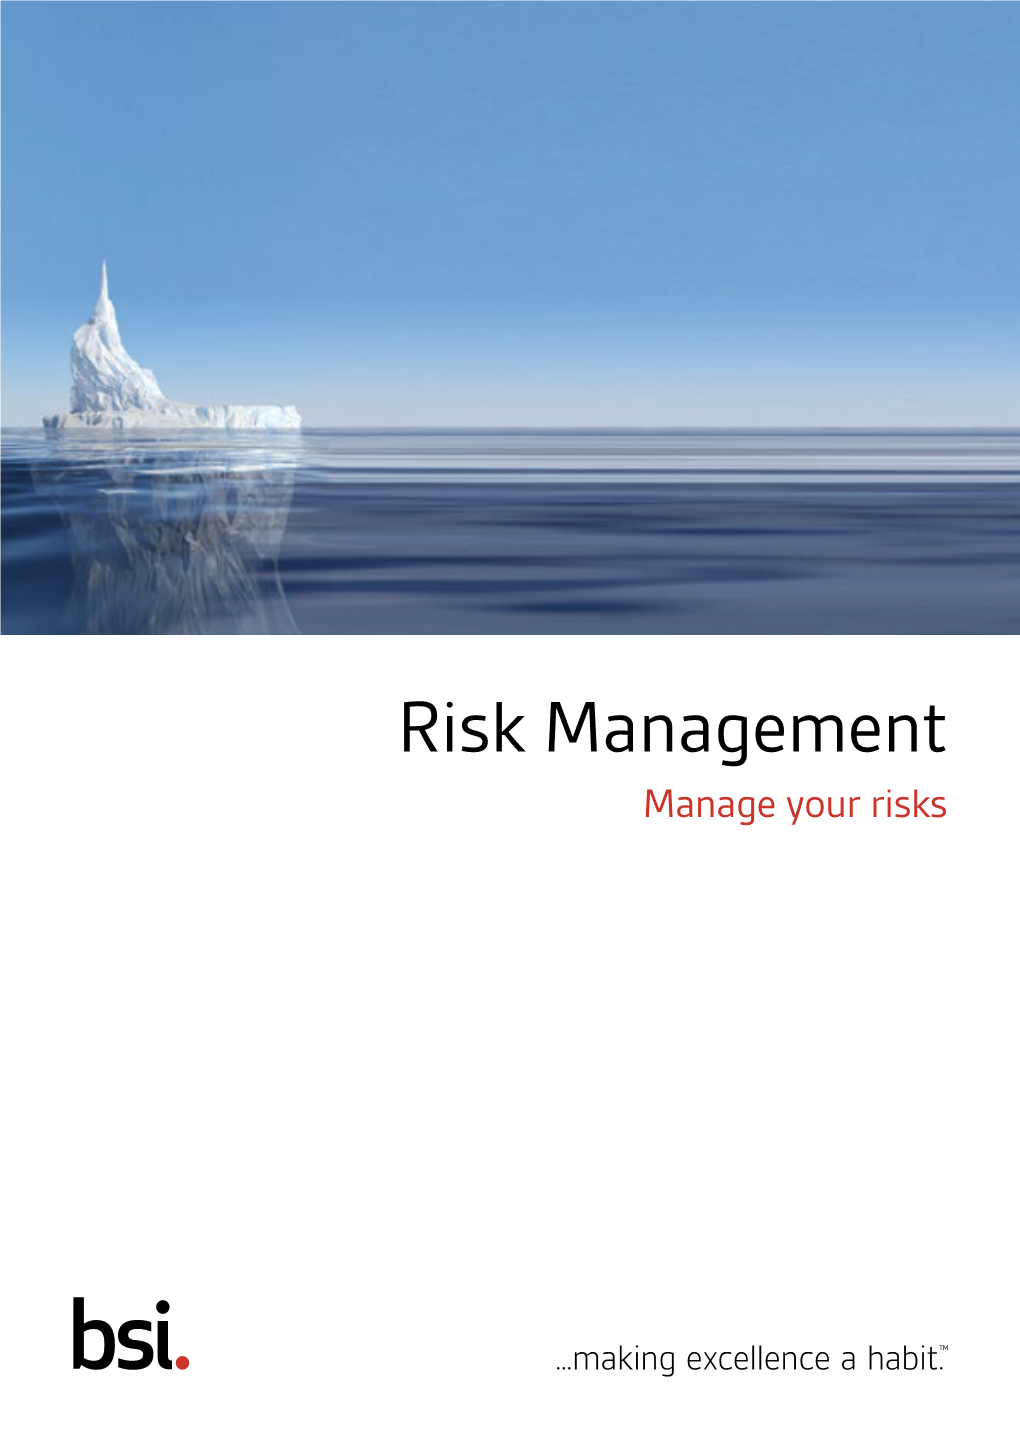 Risk Management Manage Your Risks Risks